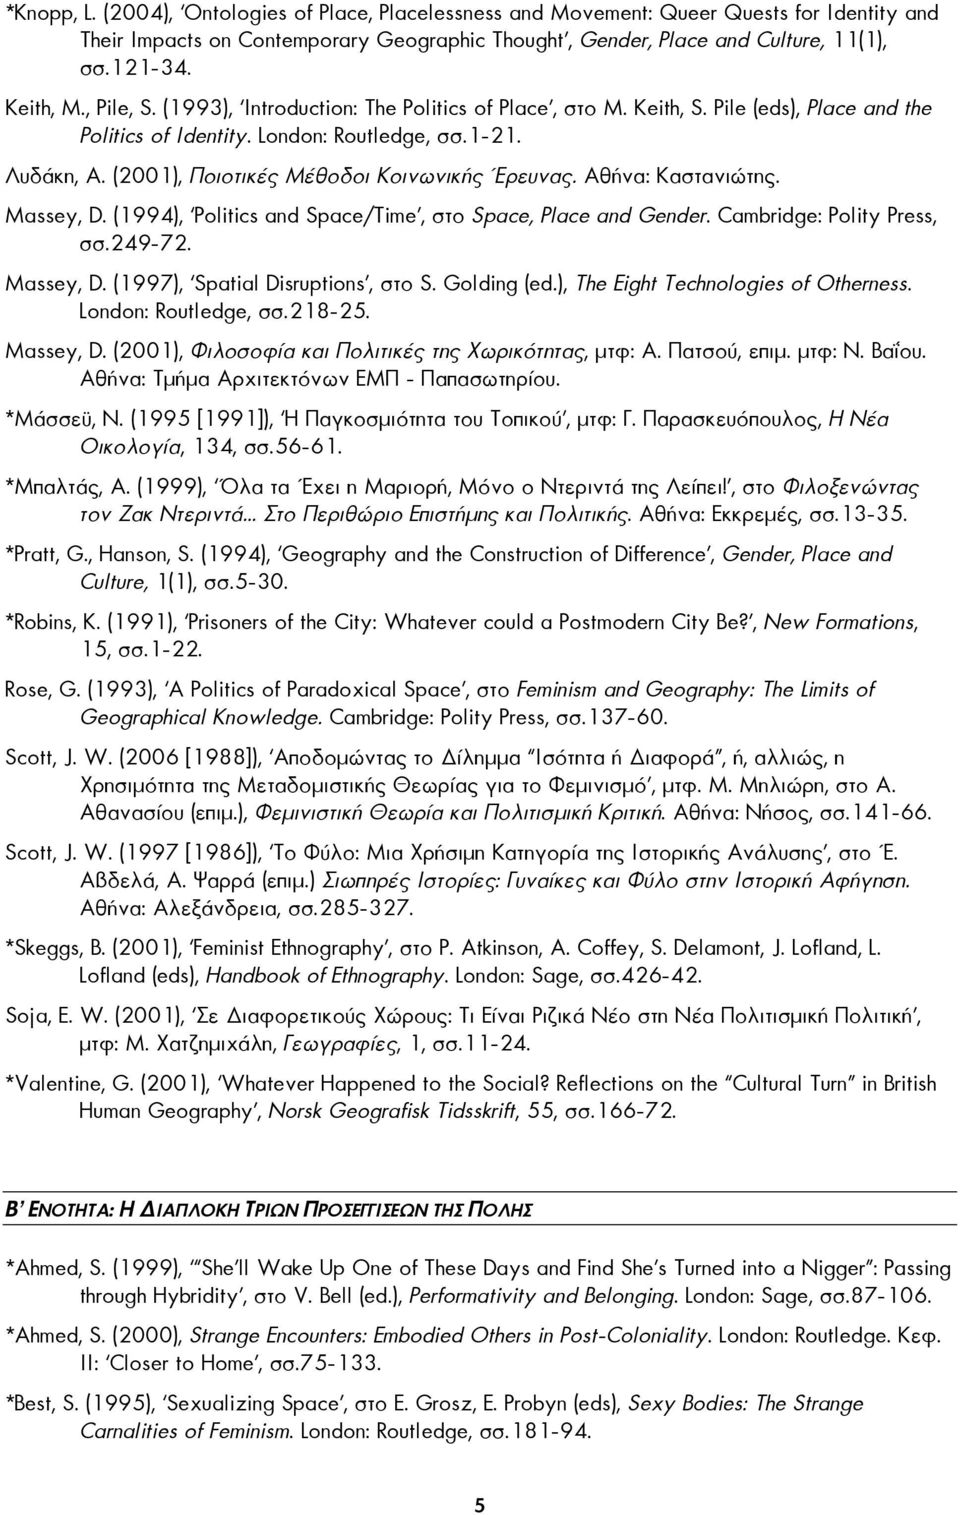 (2001), Ποιοτικές Μέθοδοι Κοινωνικής Έρευνας. Αθήνα: Καστανιώτης. Massey, D. (1994), Politics and Space/Time, στο Space, Place and Gender. Cambridge: Polity Press, σσ.249-72. Massey, D. (1997), Spatial Disruptions, στο S.